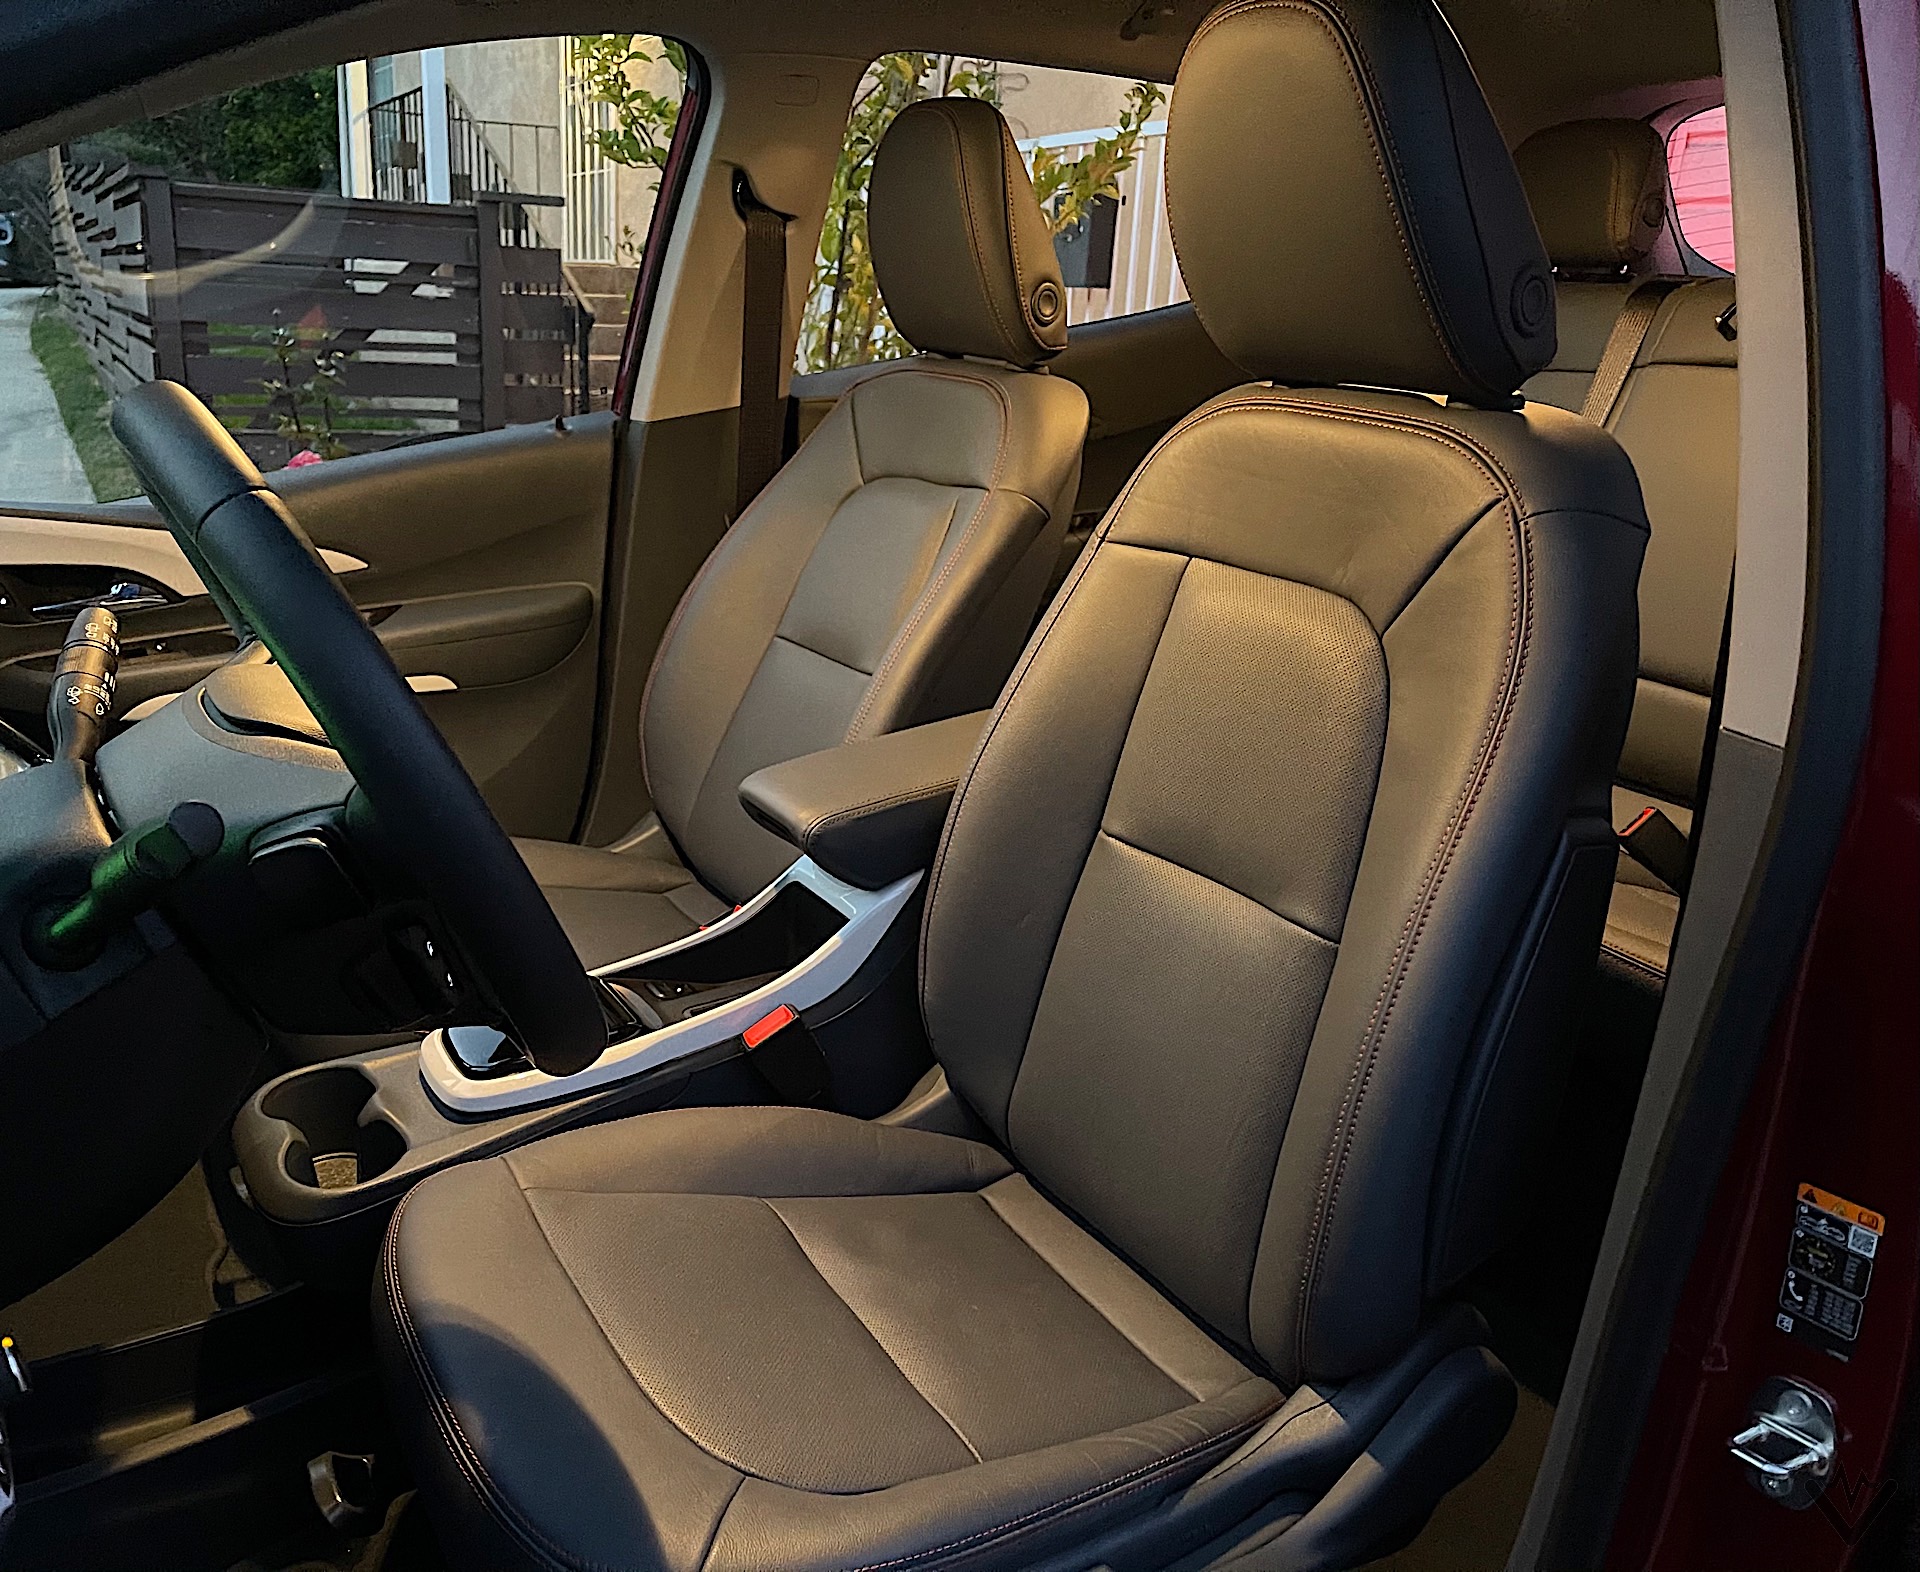 2021 Chevrolet Bolt EV interior 01 1